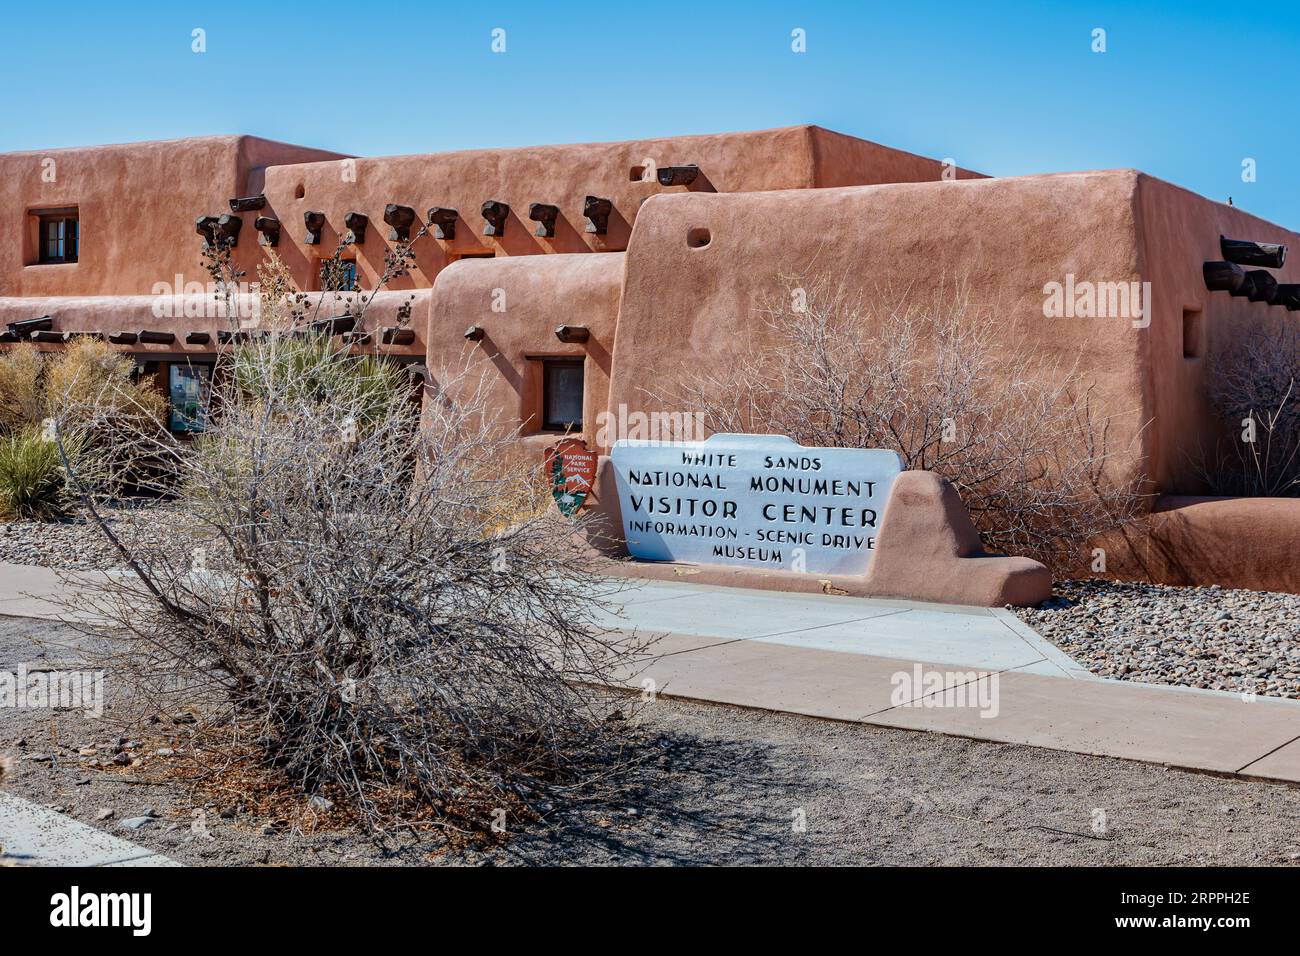 Eintritt zum White Sands National Monument Visitor Center in der Nähe von Alamogordo, New Mexico Stockfoto